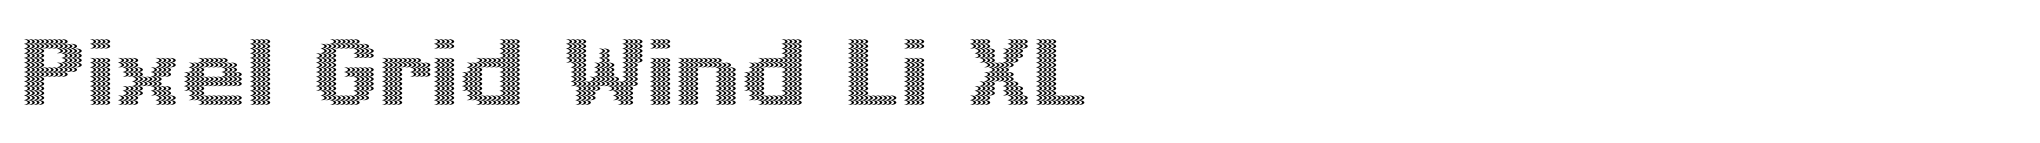 Pixel Grid Wind Li XL image